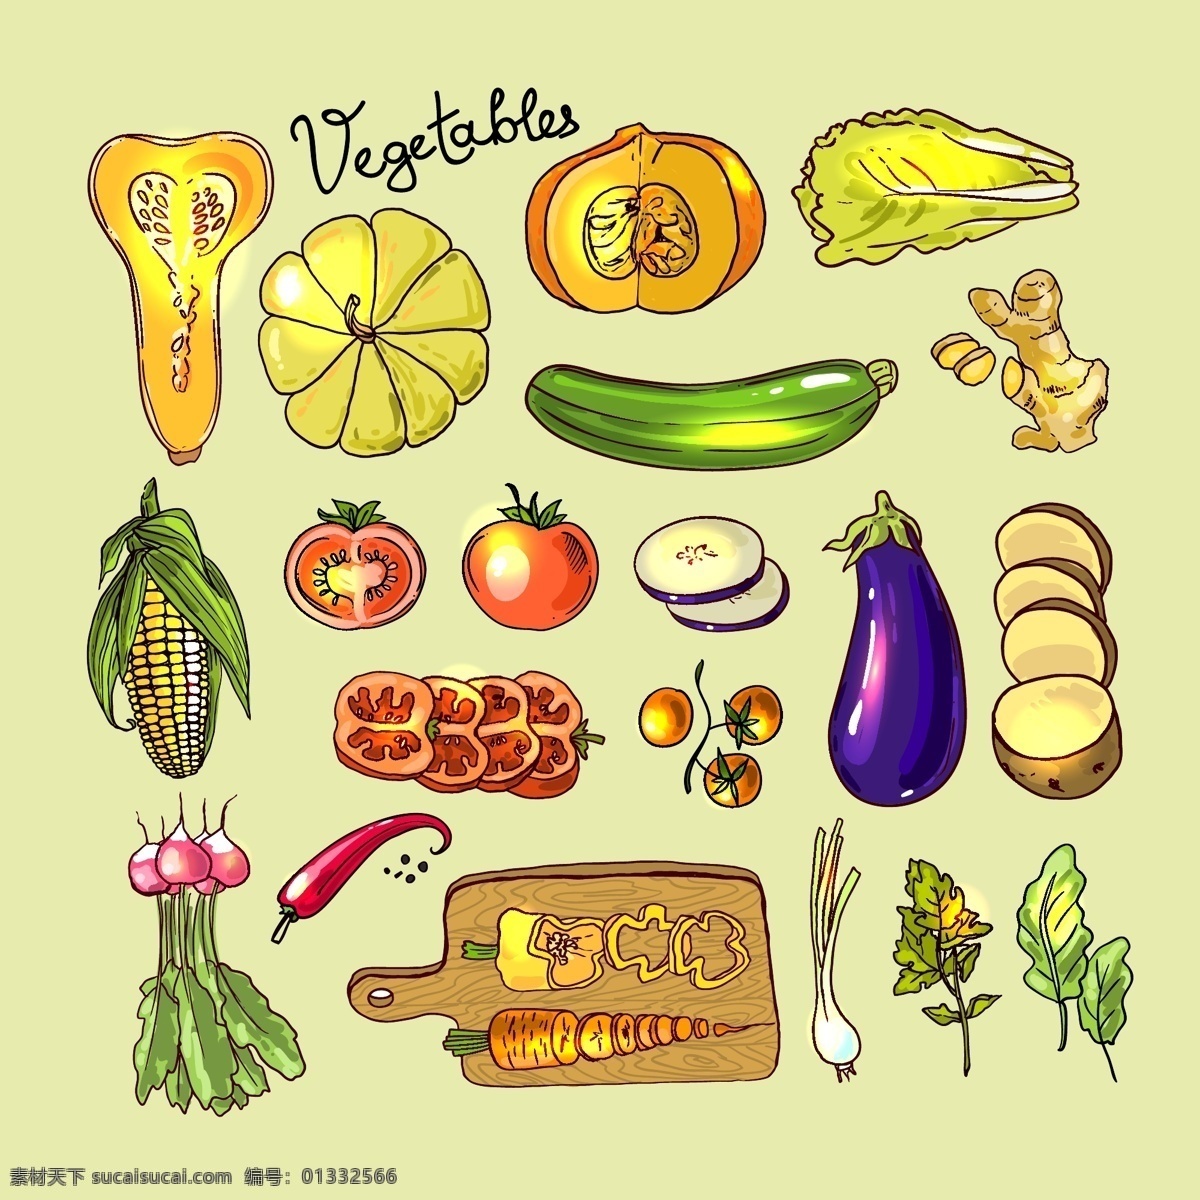 手绘 食物 果蔬 矢量 平面设计 矢量素材 设计素材 背景素材